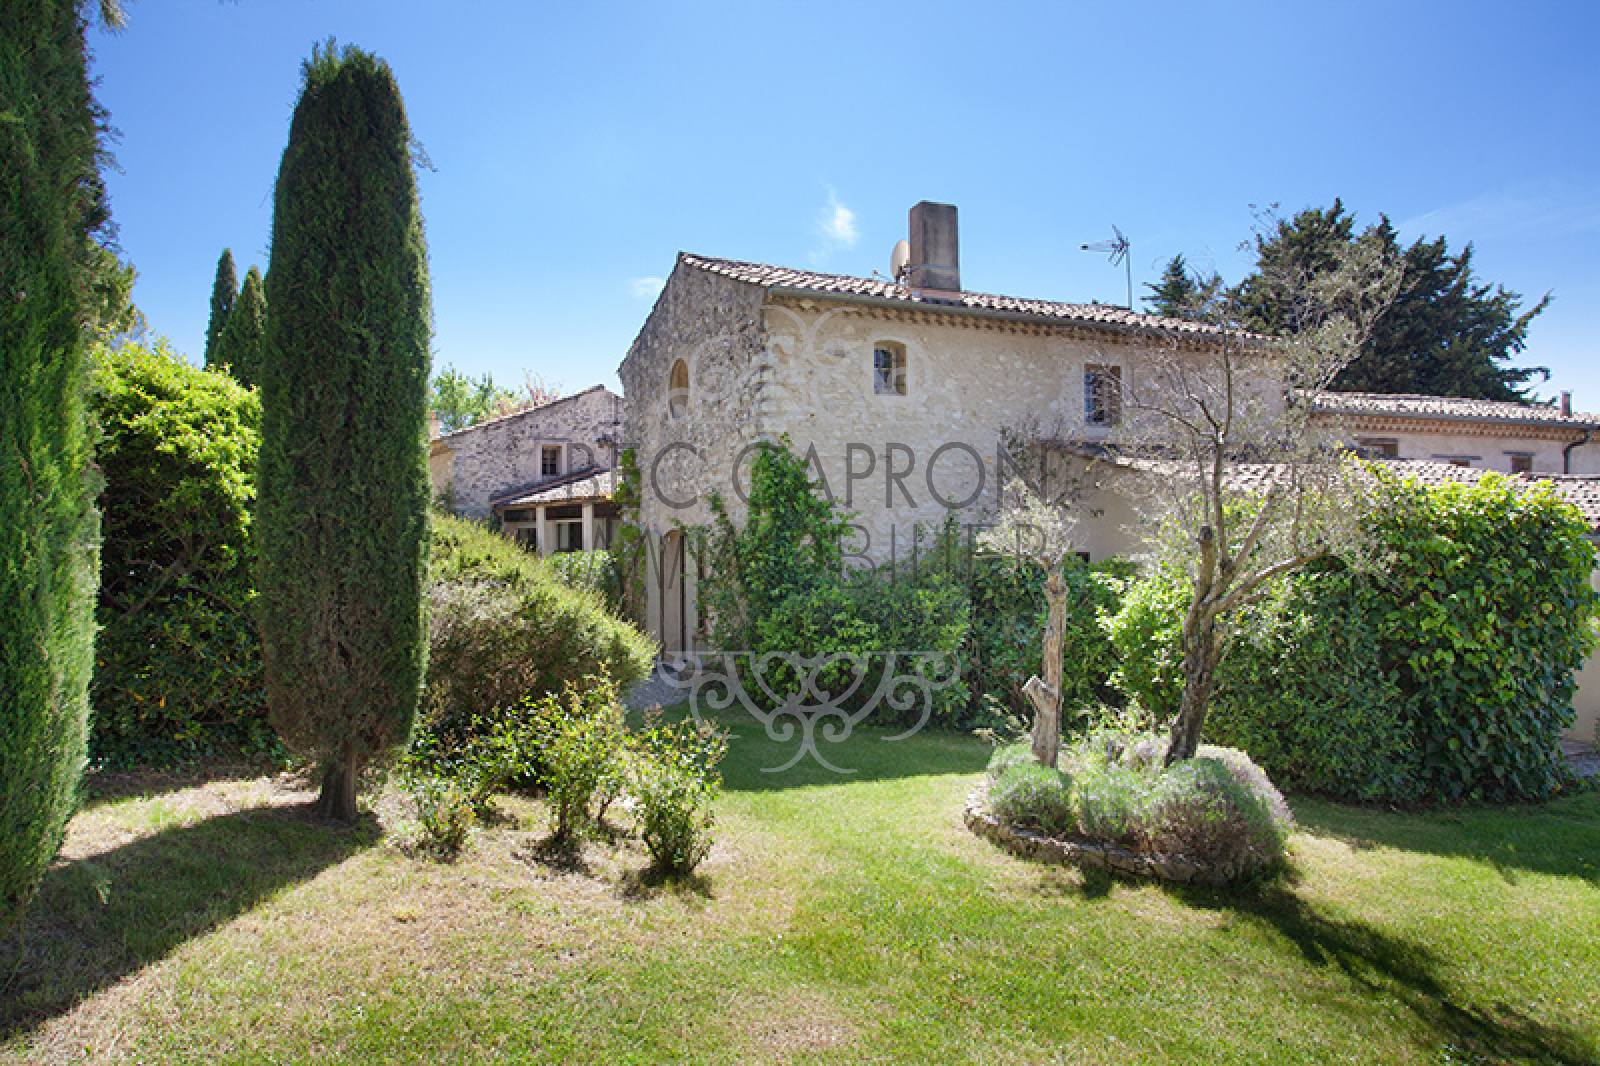 Image_5, Maisons (maison, propriÃ©tÃ©, villa, Mas,bastide, maison de village), Aix-en-Provence, ref :948 VM